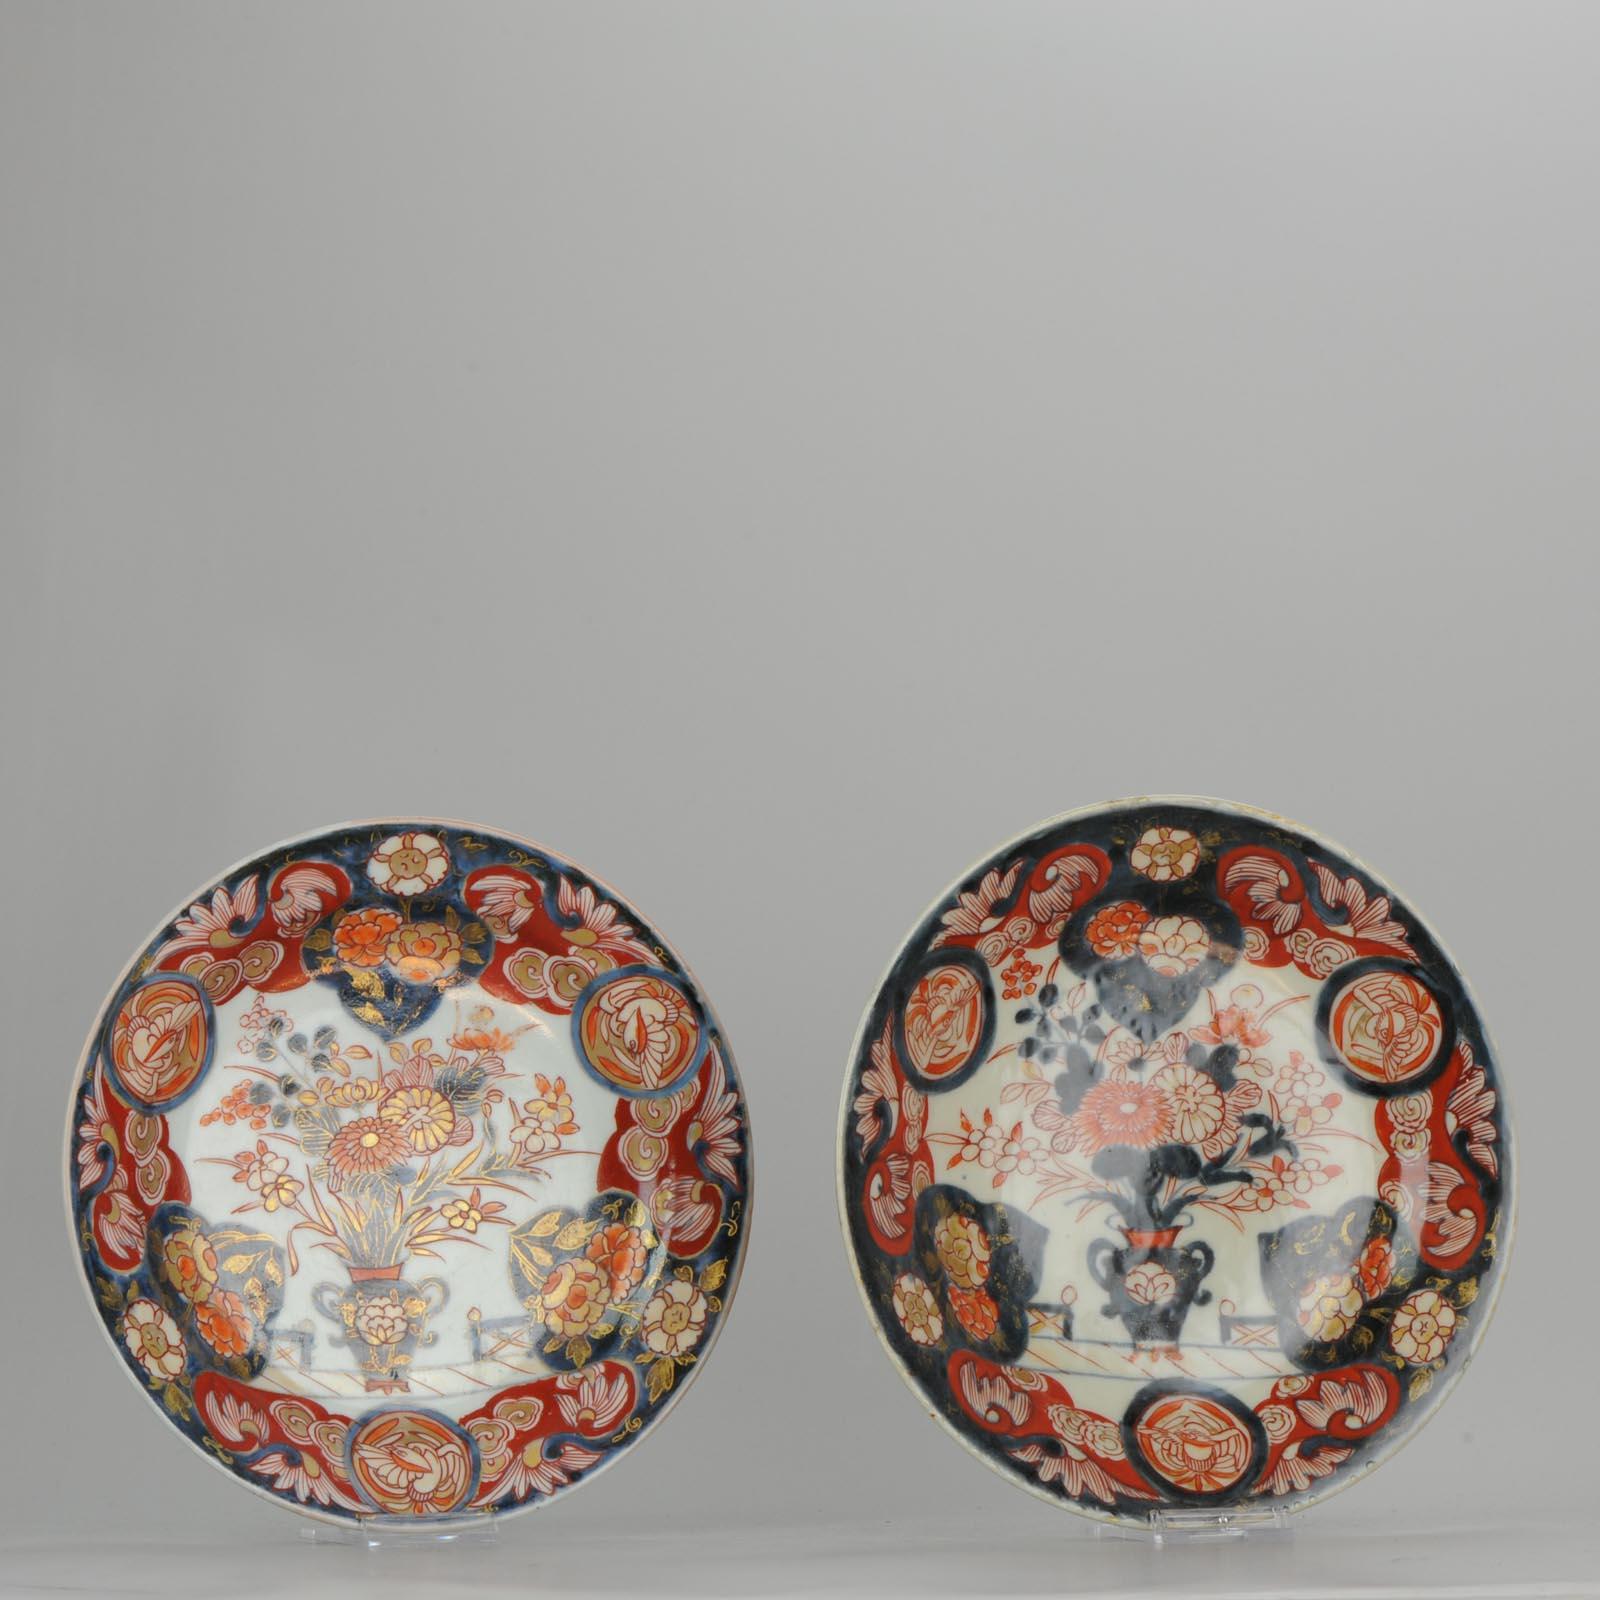 Antique circa 1700 Japanese Imari Porcelain Plates Arita Edo Flowers 2